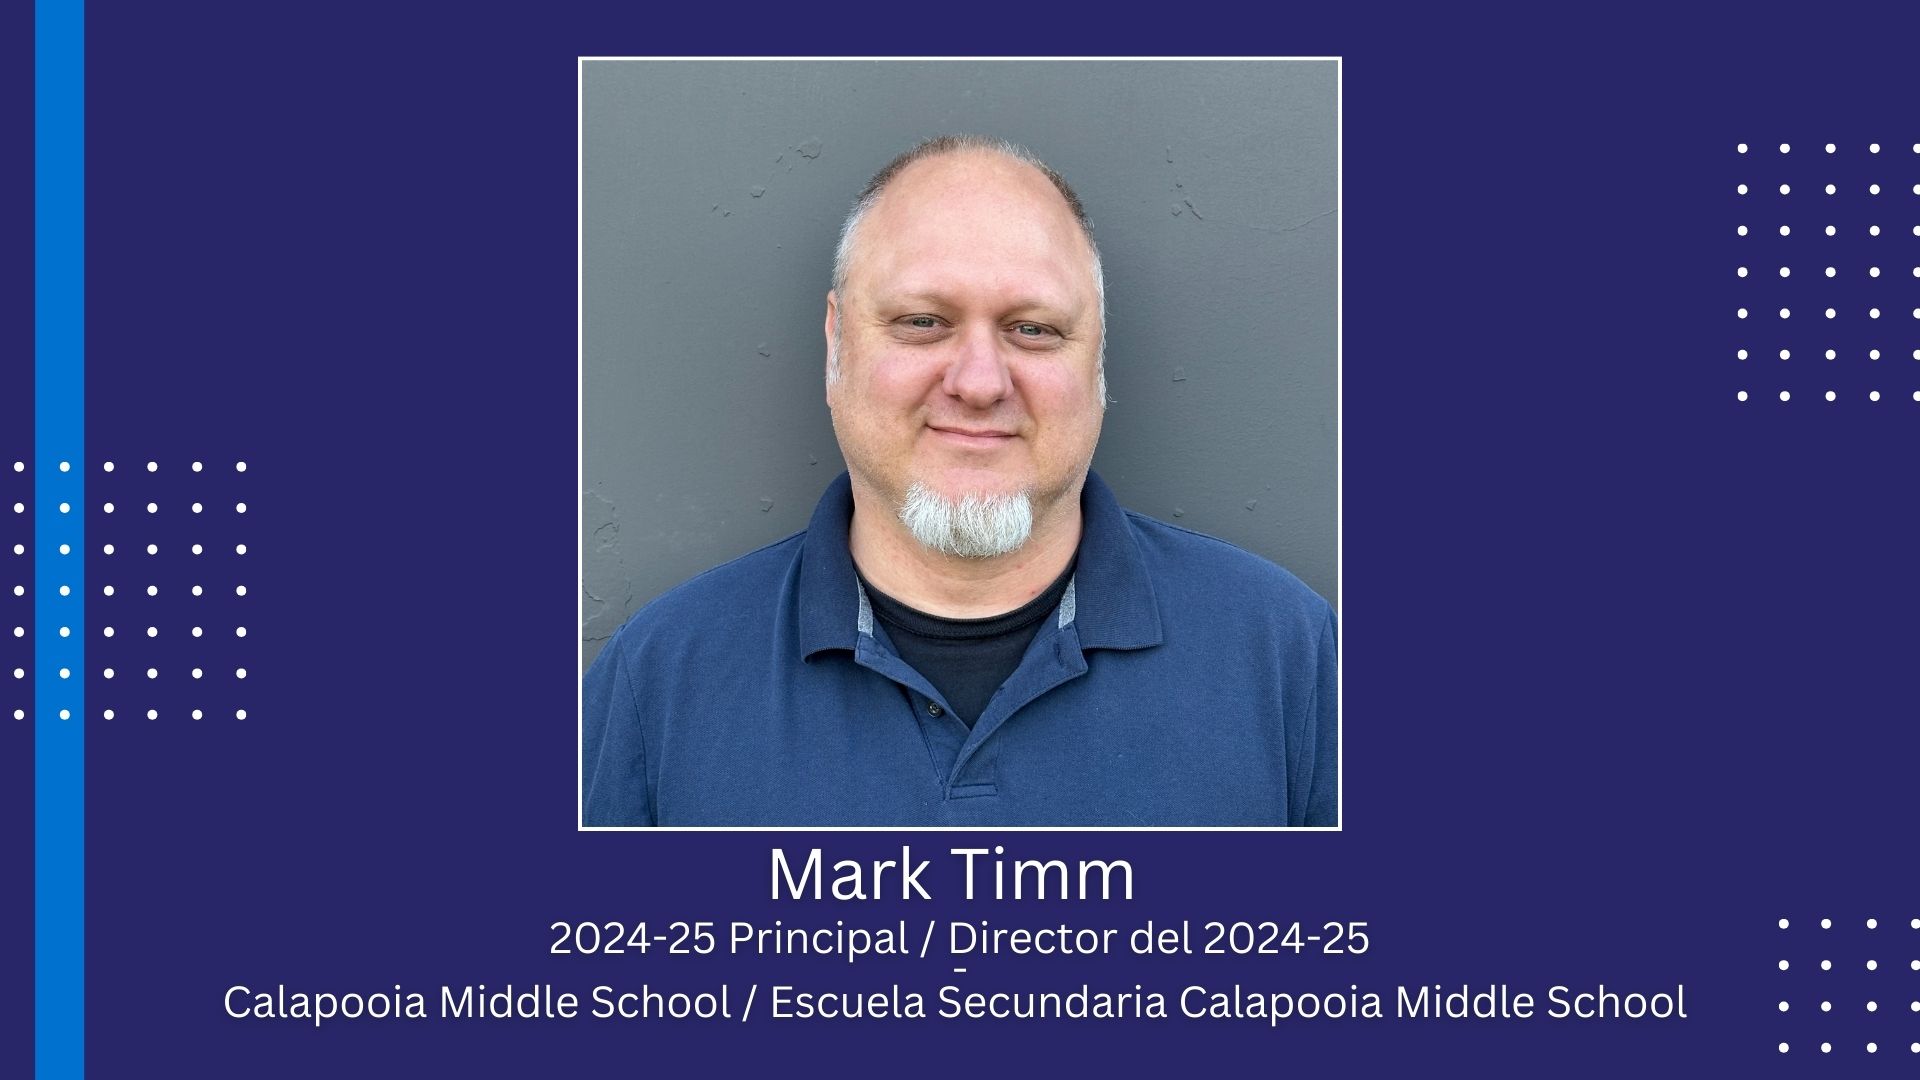 Timm to lead Calapooia Middle School beginning 2024-25 school year/ El Sr. Timm dirigirá la escuela secundaria Calapooia a partir del año escolar 2024-25